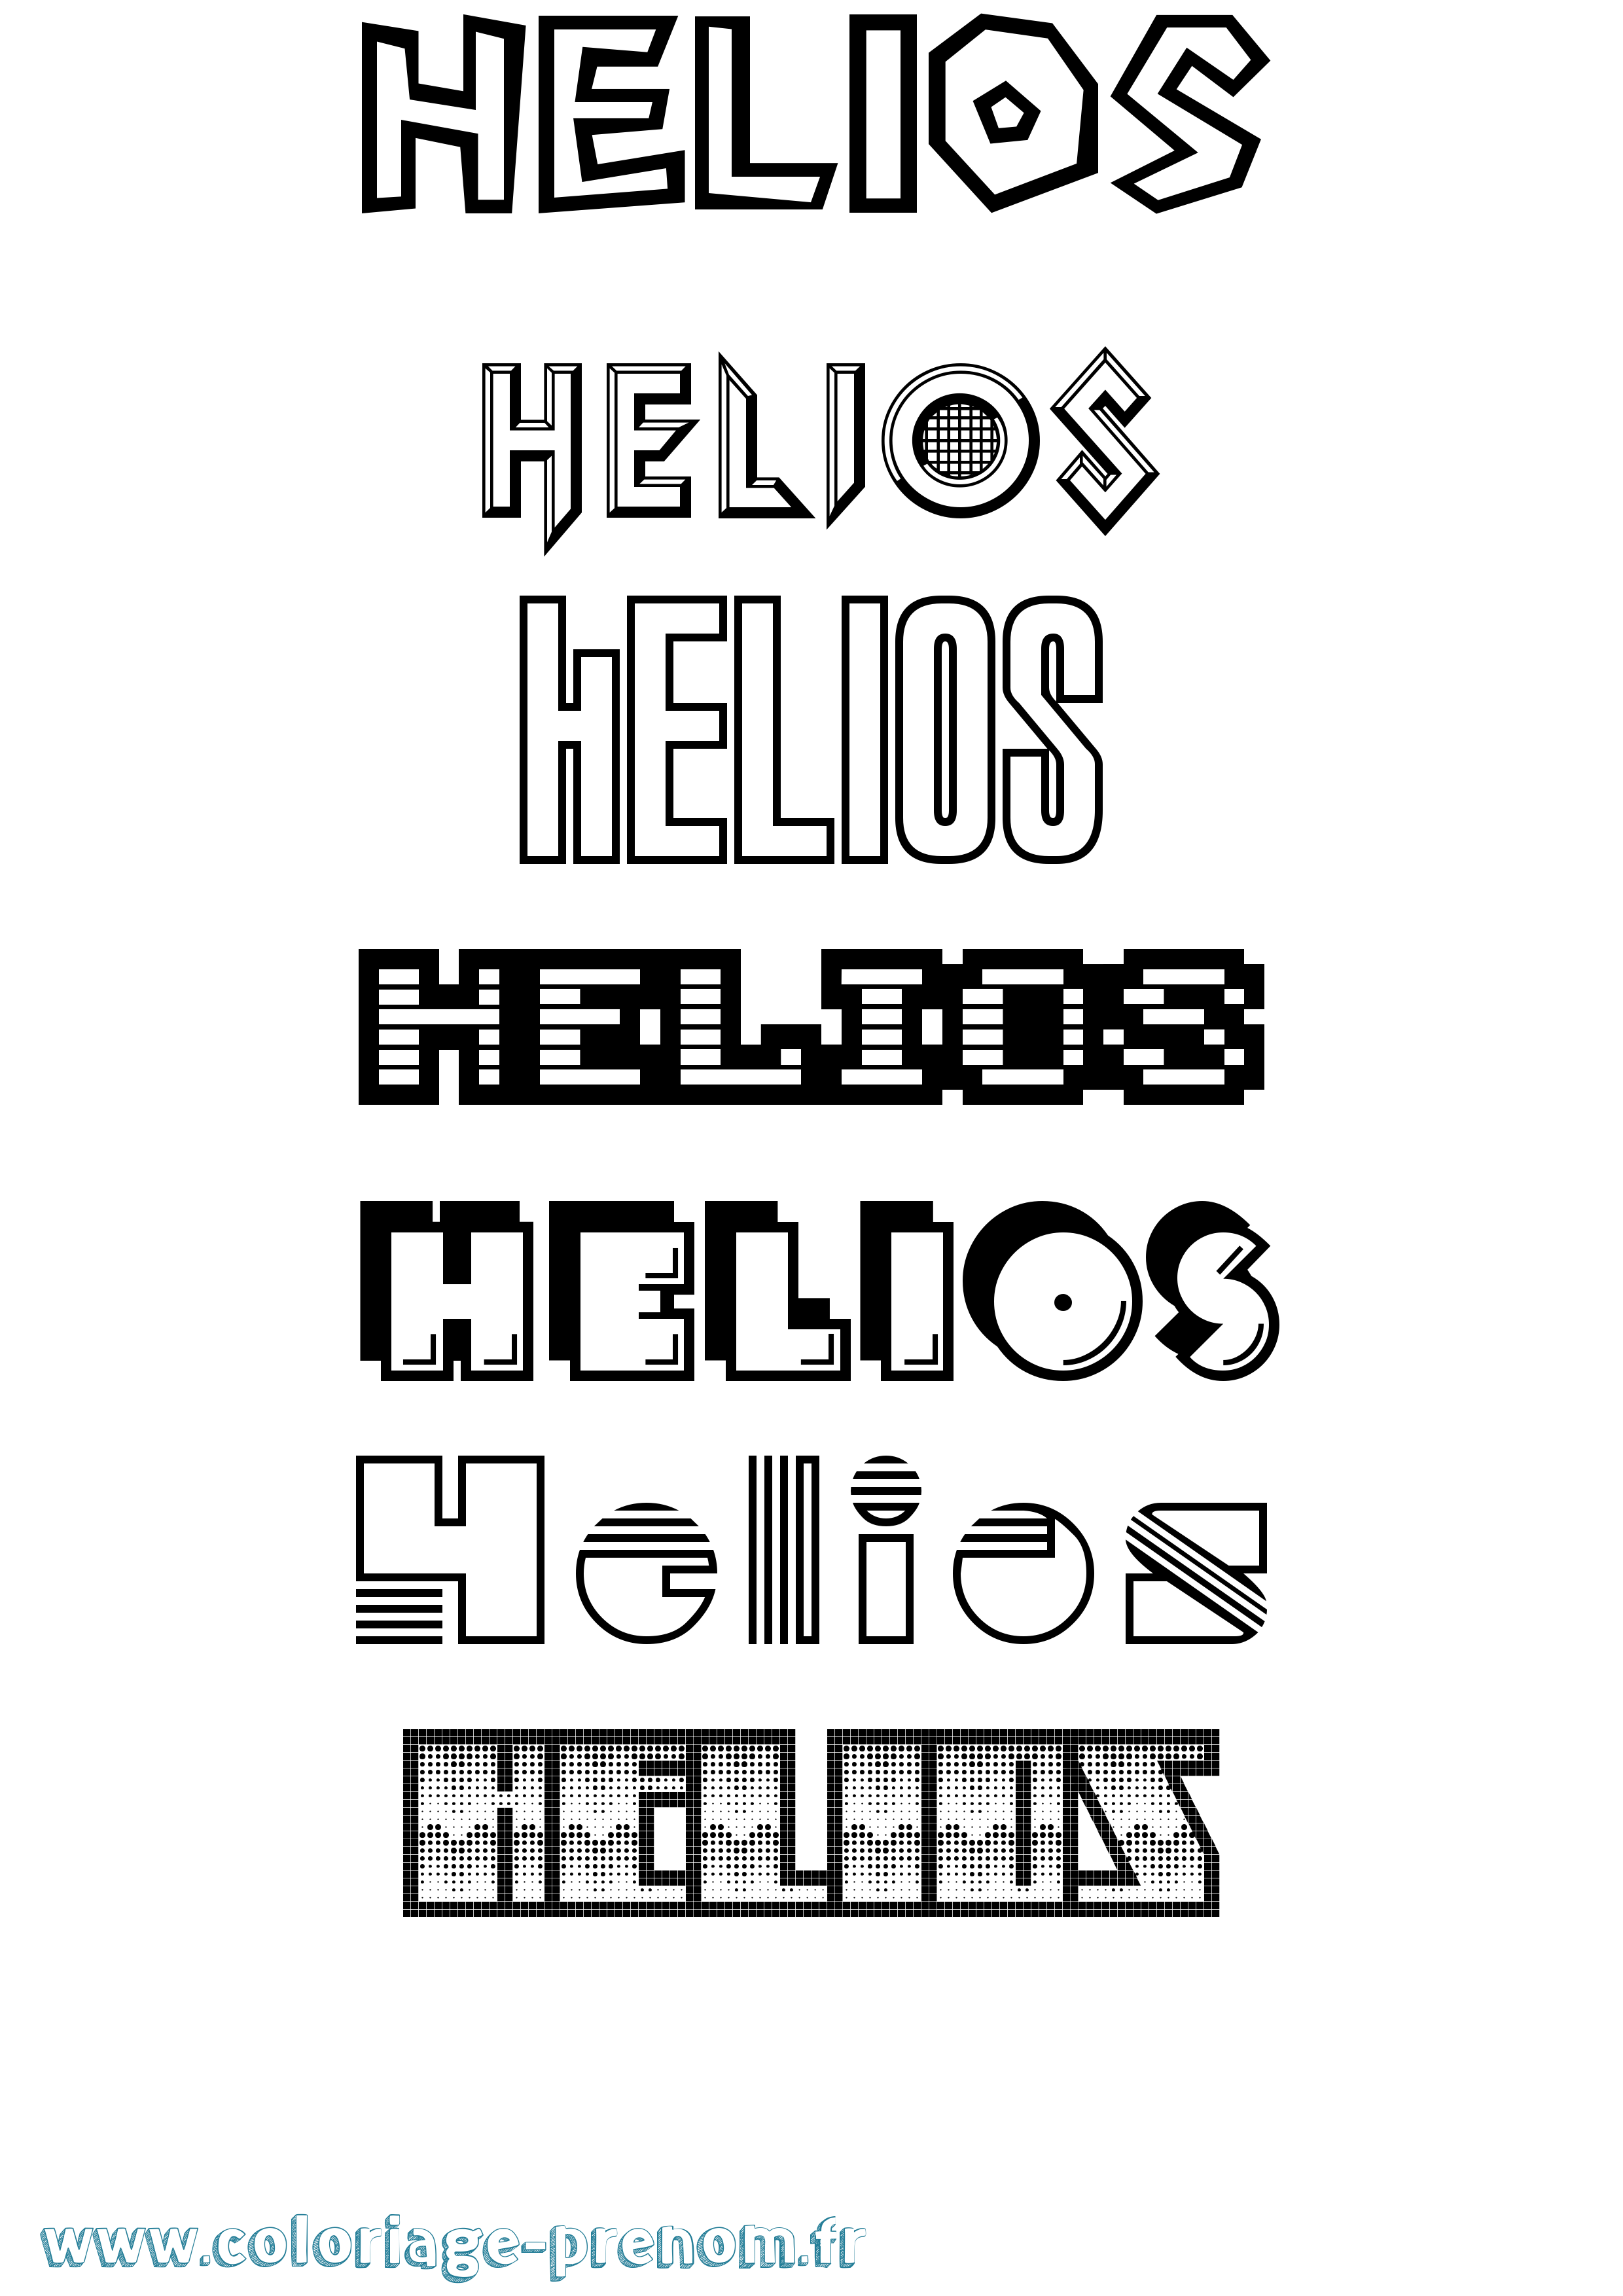 Coloriage prénom Helios Jeux Vidéos